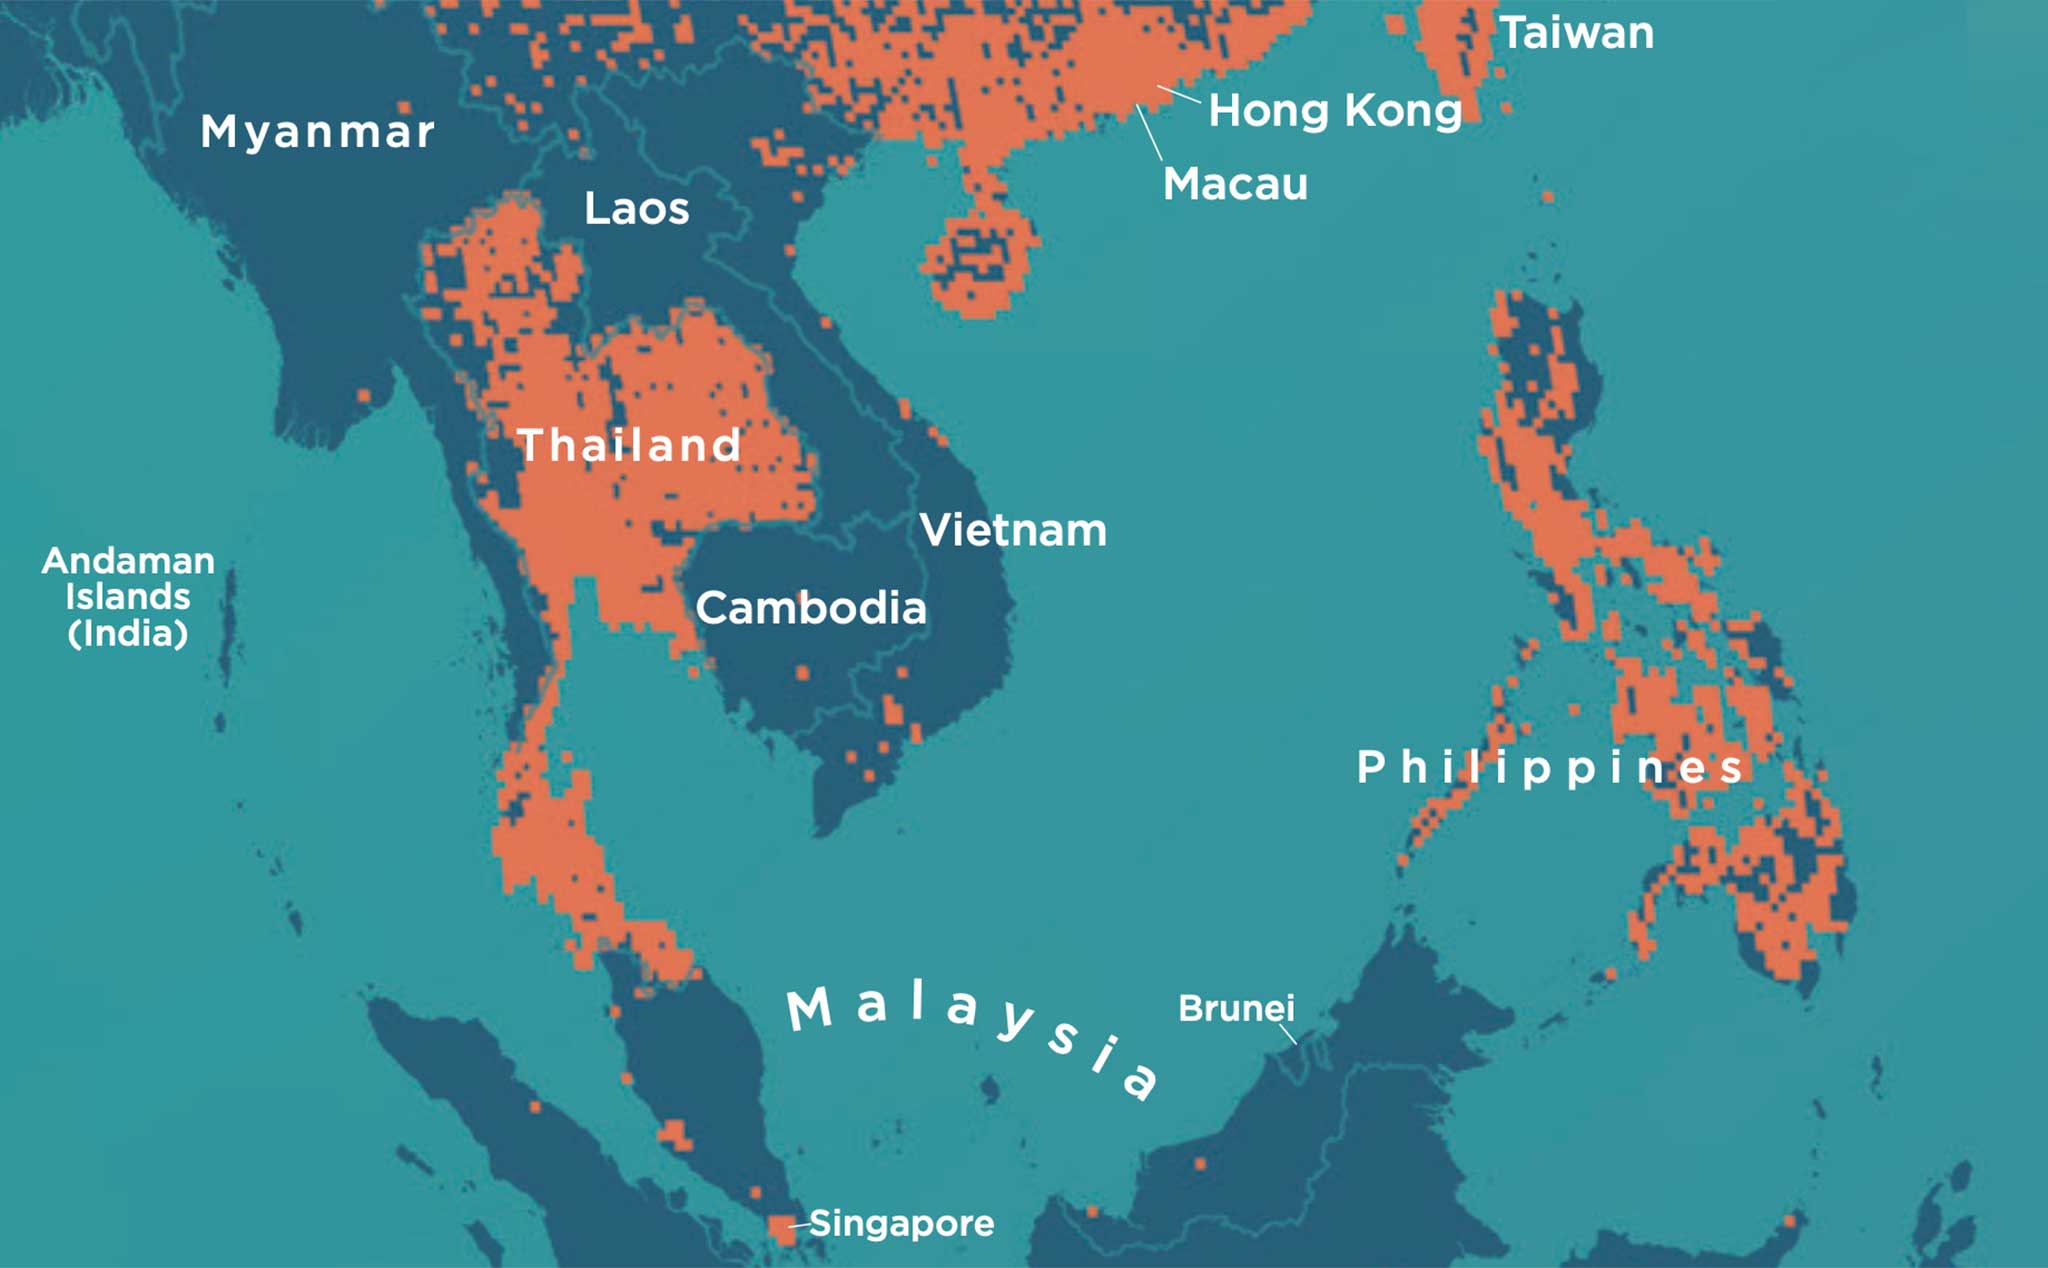 Bản Đồ Phủ Sóng 5G Đông Nam Á: Với việc triển khai công nghệ 5G, bạn sẽ được trải nghiệm tốc độ truy cập internet nhanh hơn và trơn tru hơn bao giờ hết. Từ các thành phố đông đúc đến các địa điểm du lịch hấp dẫn, sức mạnh của 5G sẽ làm thay đổi cách bạn truy cập thông tin và giải trí.